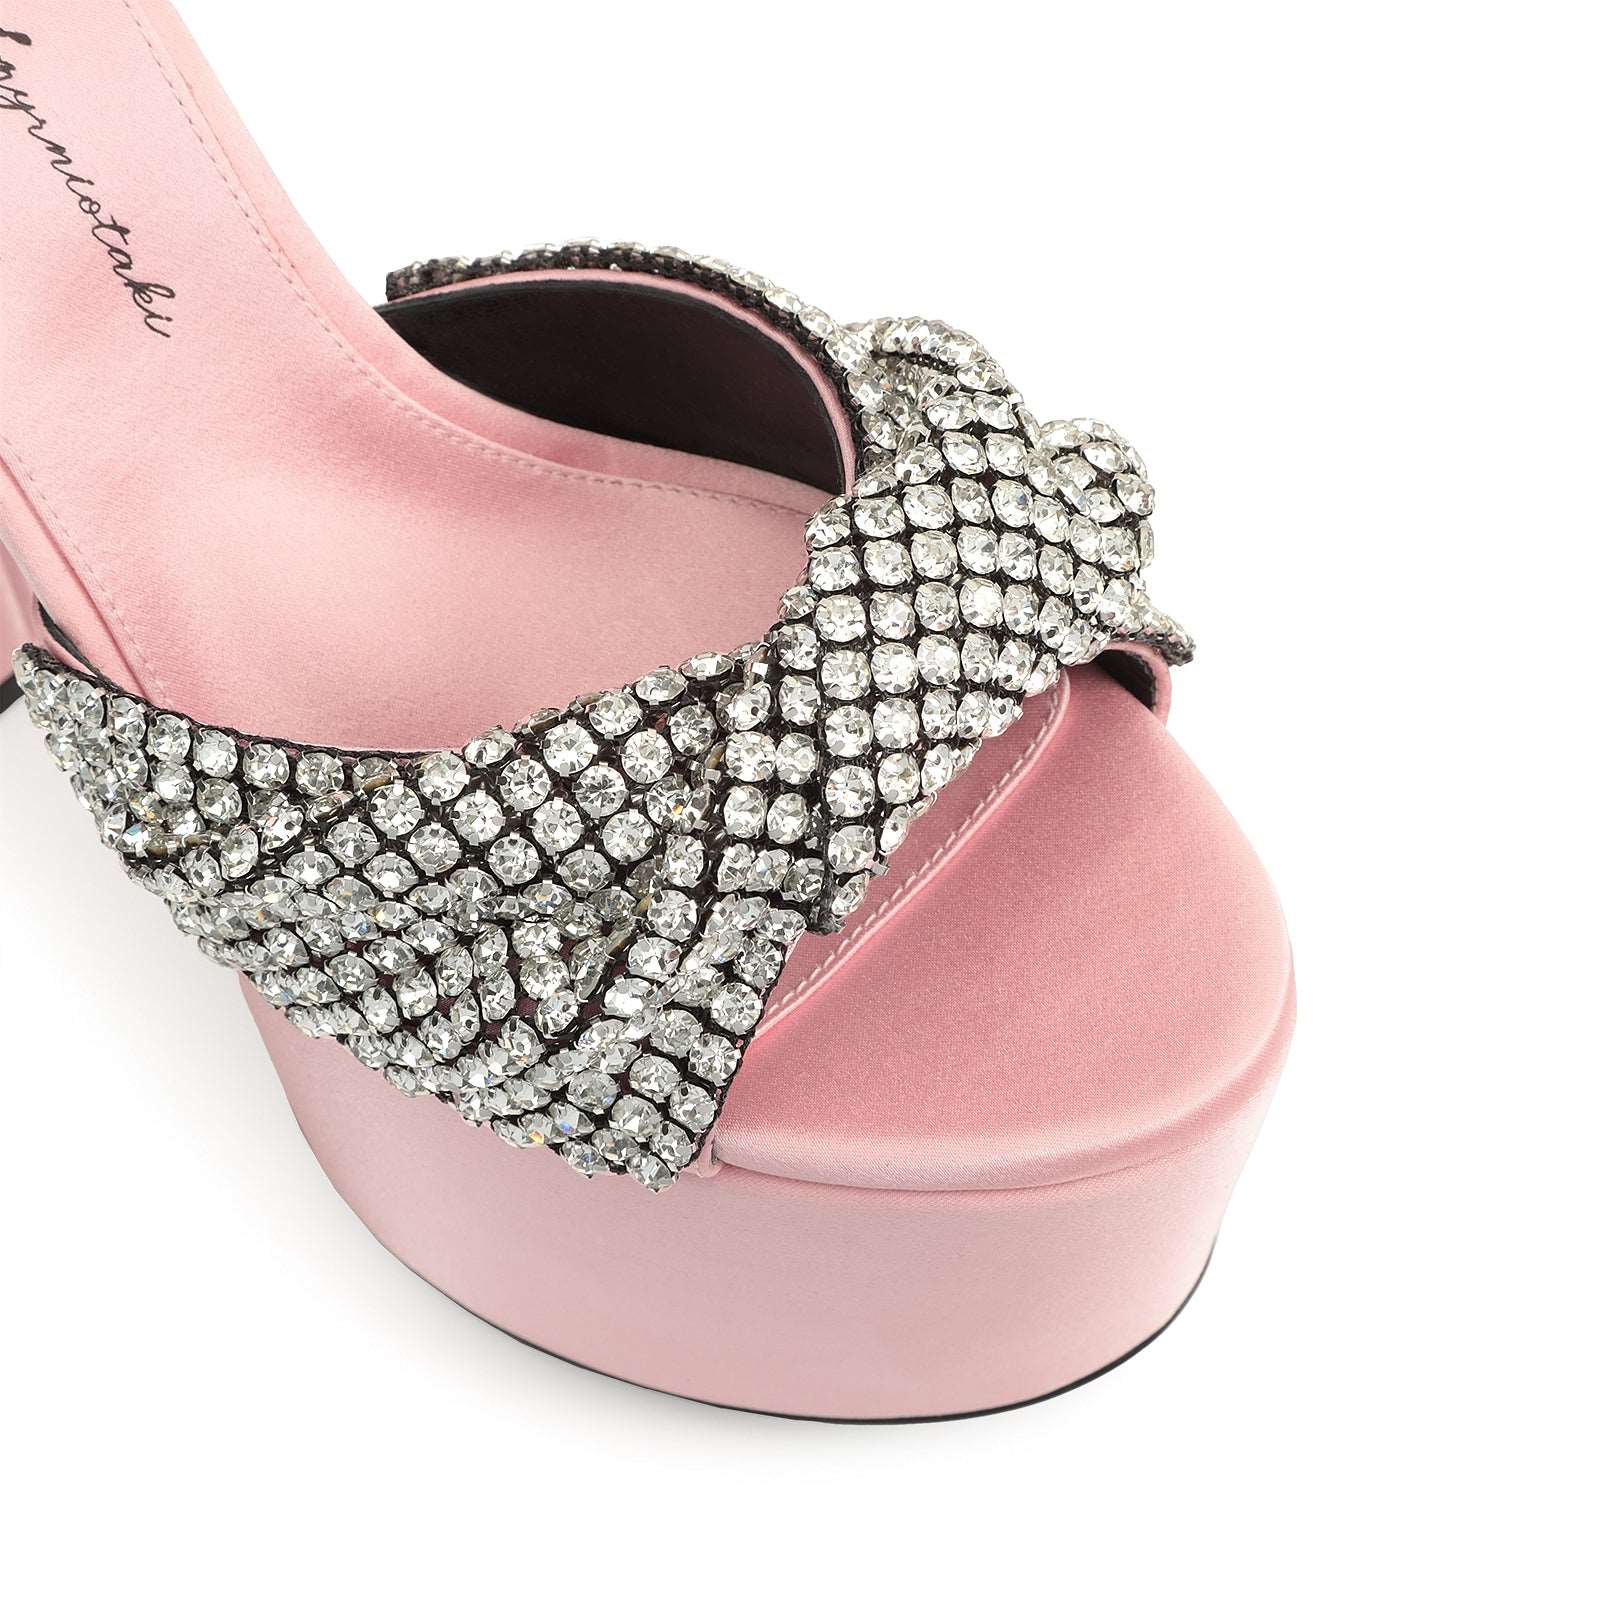 Evangelie Sandal Heel|B01230MFI625 Pale Pink